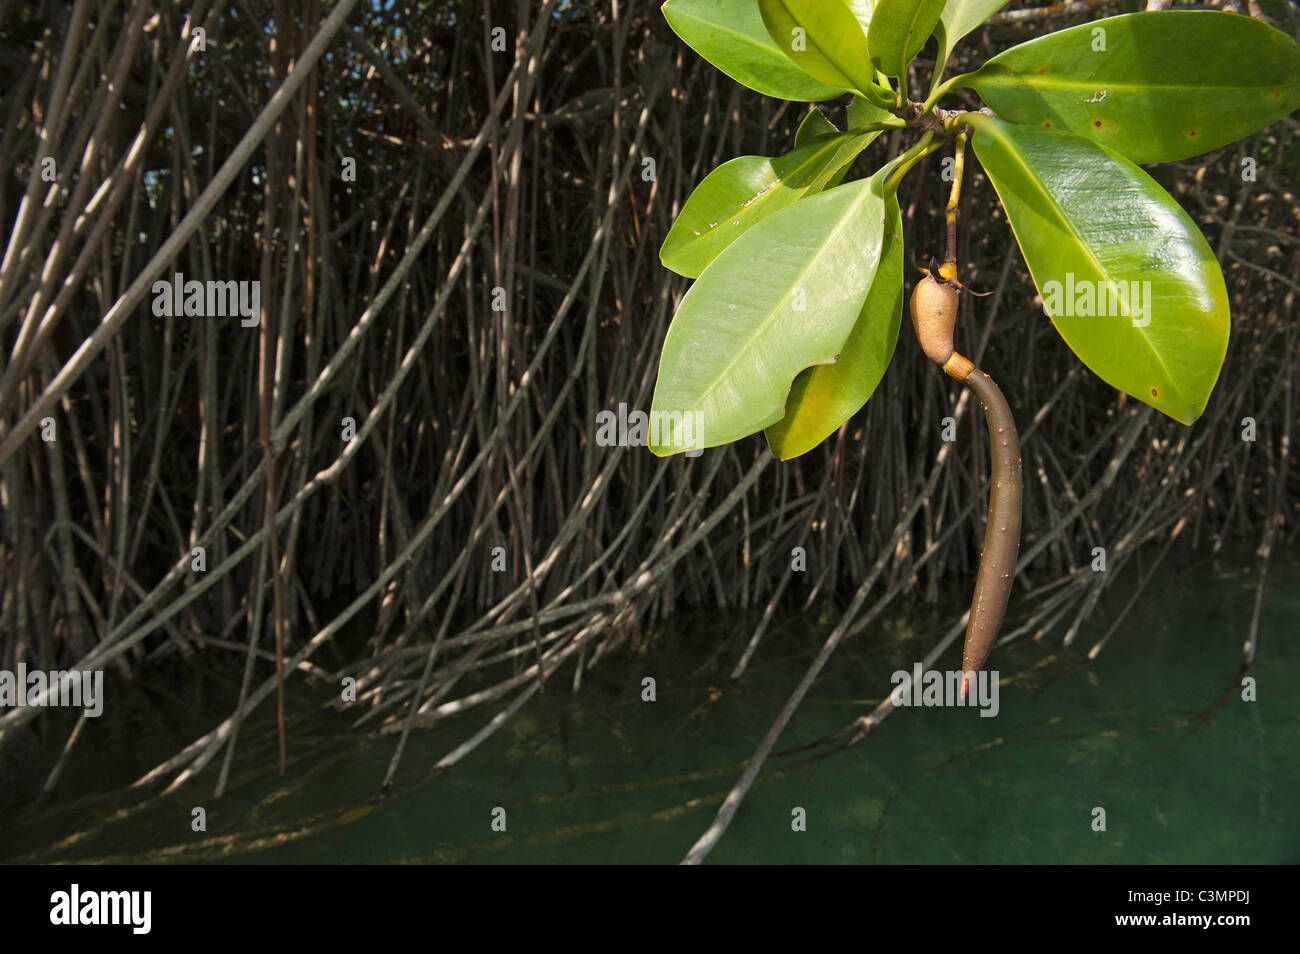 Mangrovia rossa (Rhizophora mangle), la piantina su un impianto. Sian Ka'an Riserva della Biosfera, la penisola dello Yucatan, Messico. Foto Stock